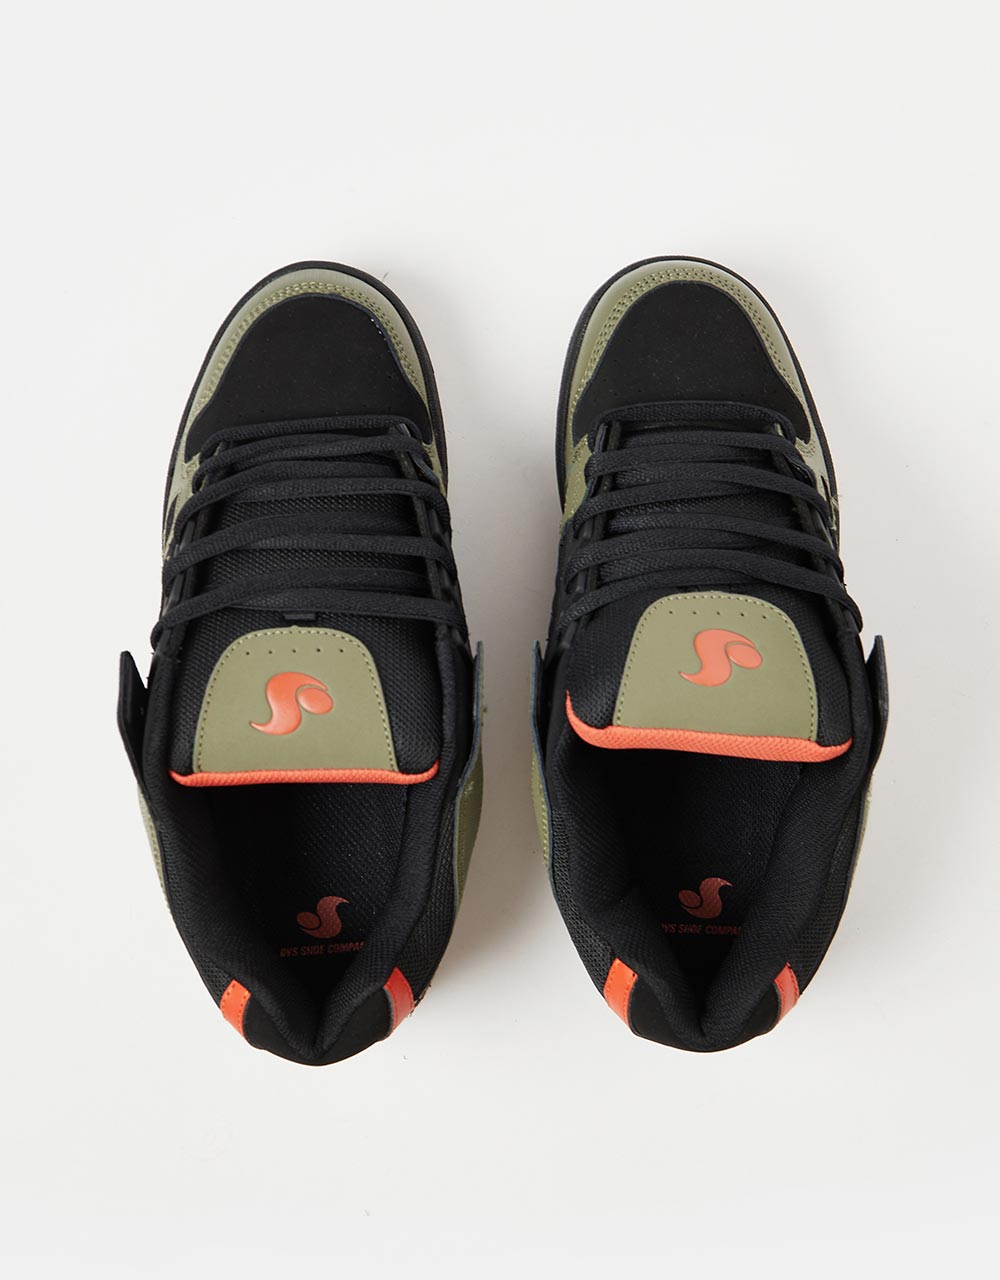 DVS Celsius Skate Shoes - Black/Olive/Orange Nubuck